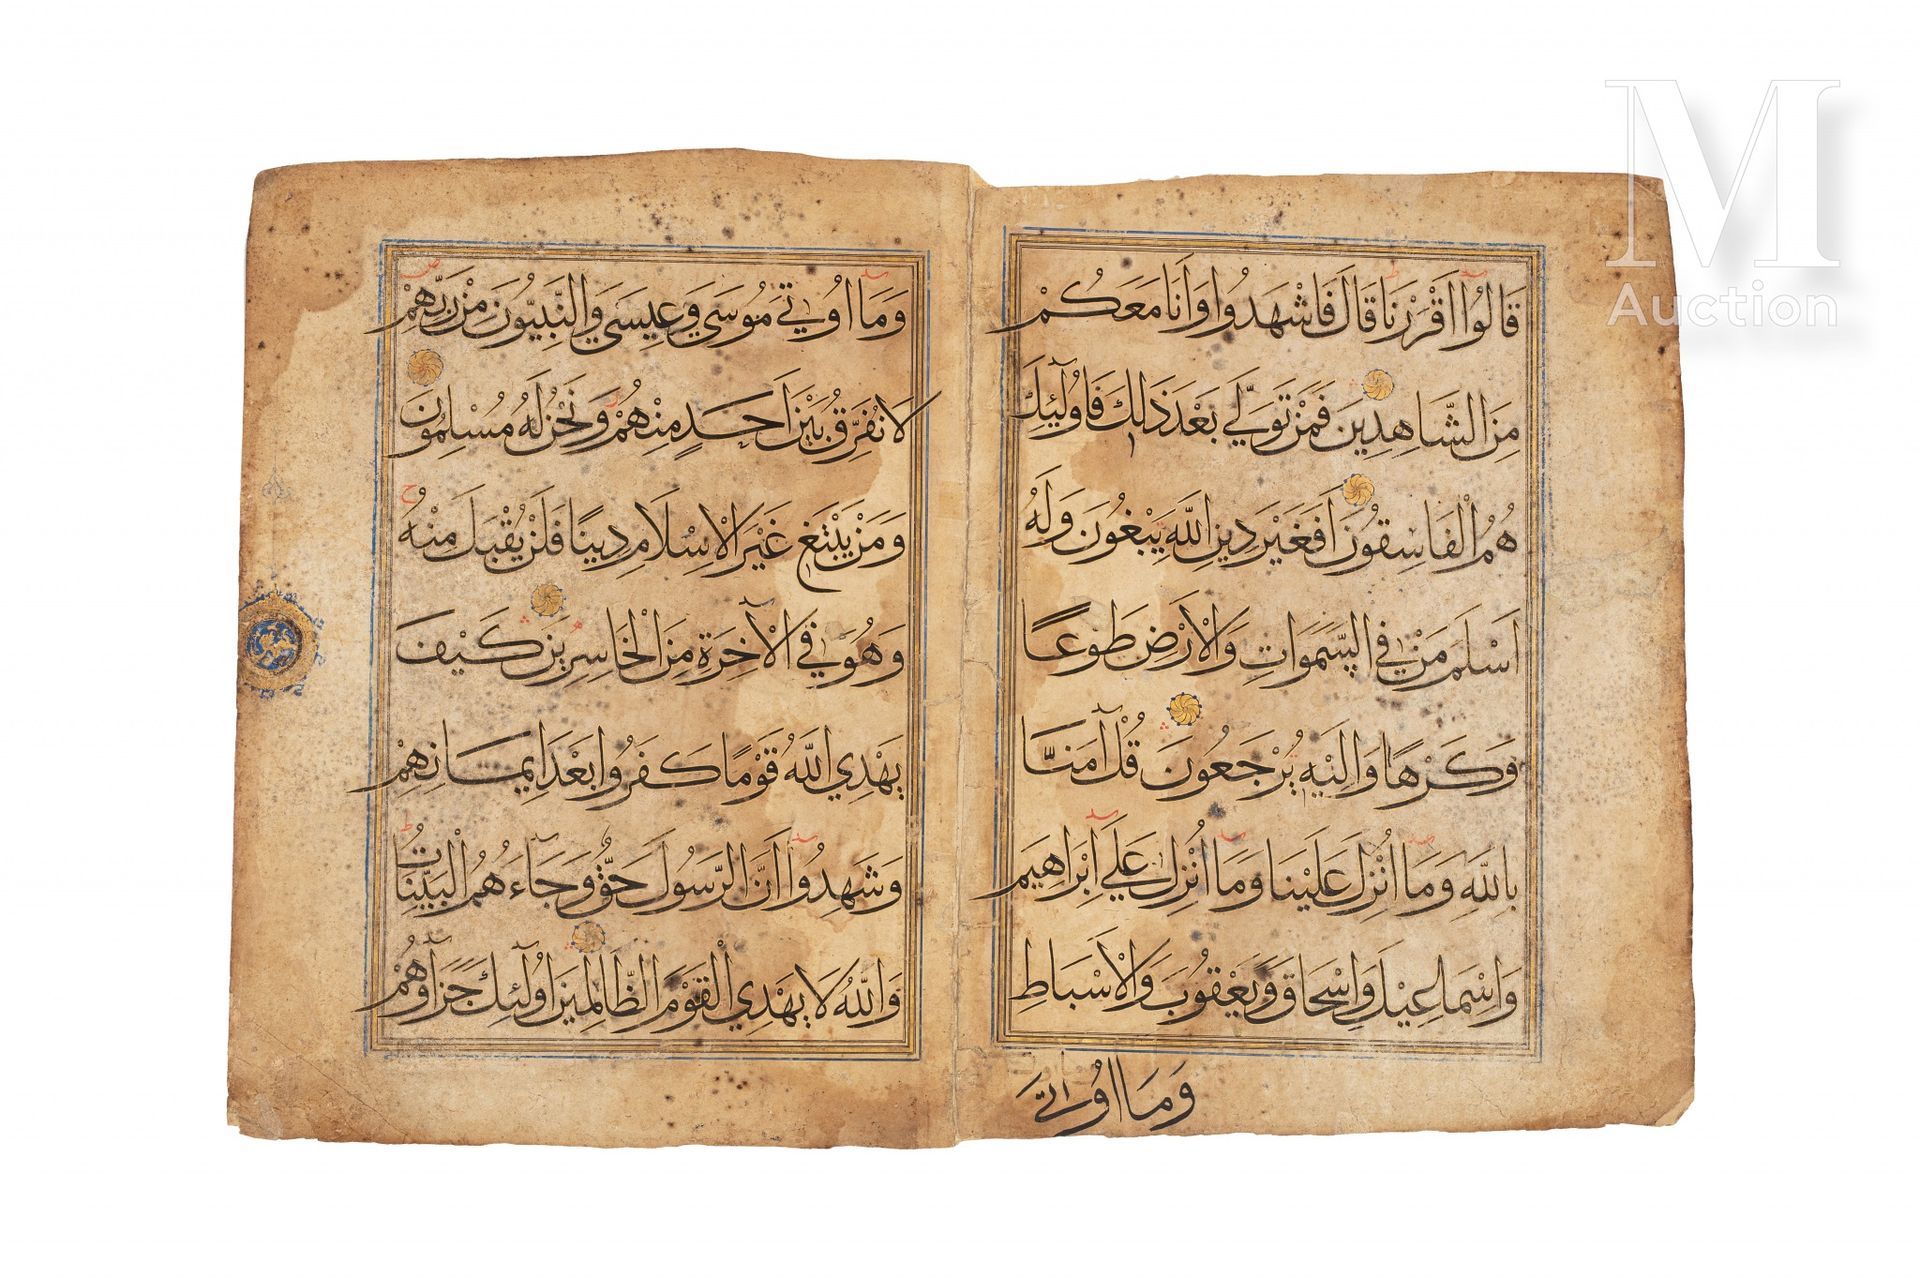 Double-page de Coran persan Iran, fin du XIVe siècle - début du XVe siècle

Doub&hellip;